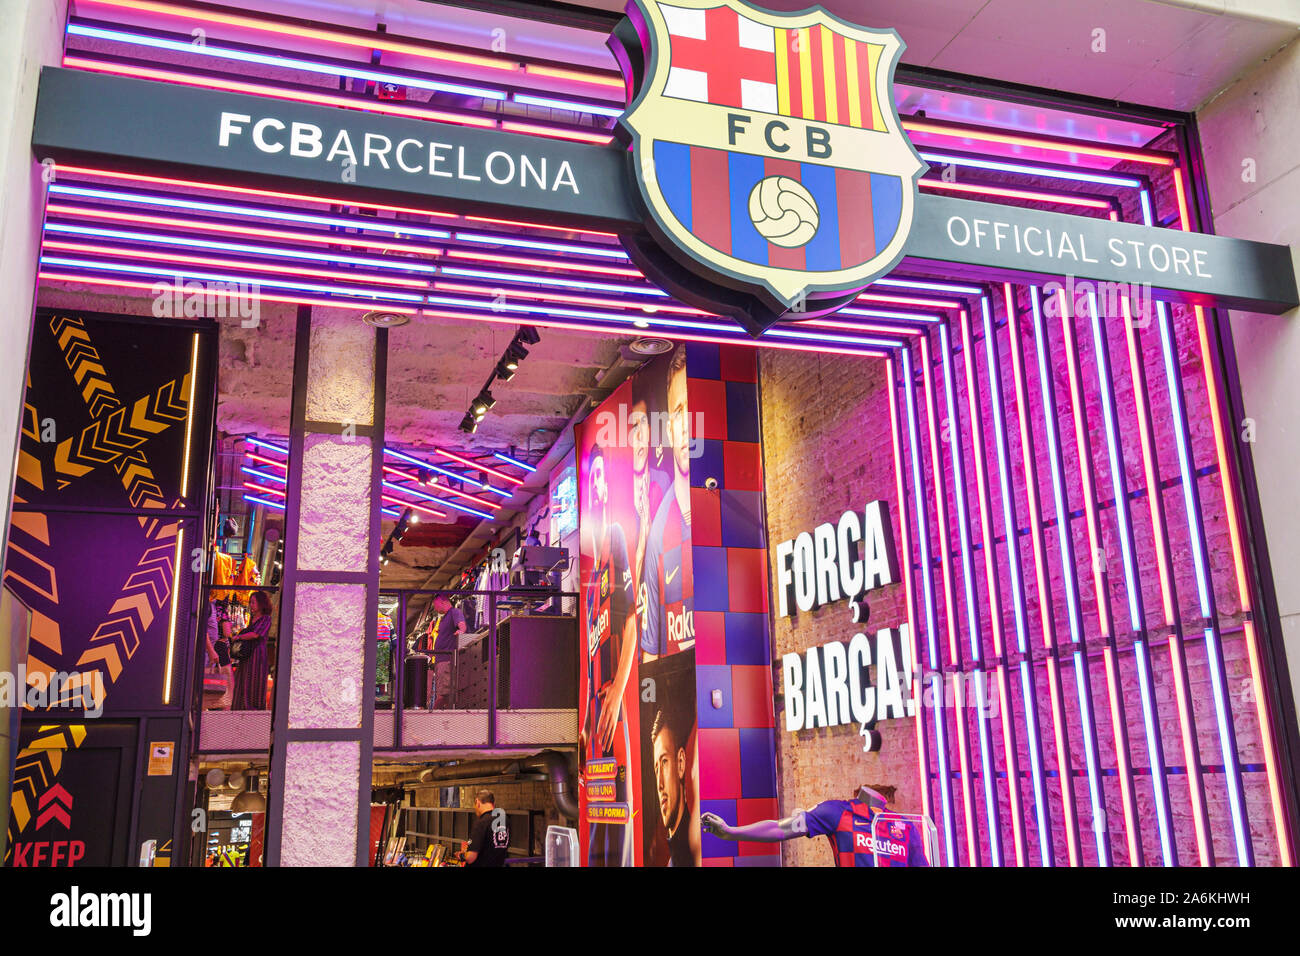 Barcellona Spagna,Catalonia Passeig de Gracia,FCBarcelona FCB Barca Official Store,futbol calcio professionistico squadra di calcio, merchandising,sport Foto Stock